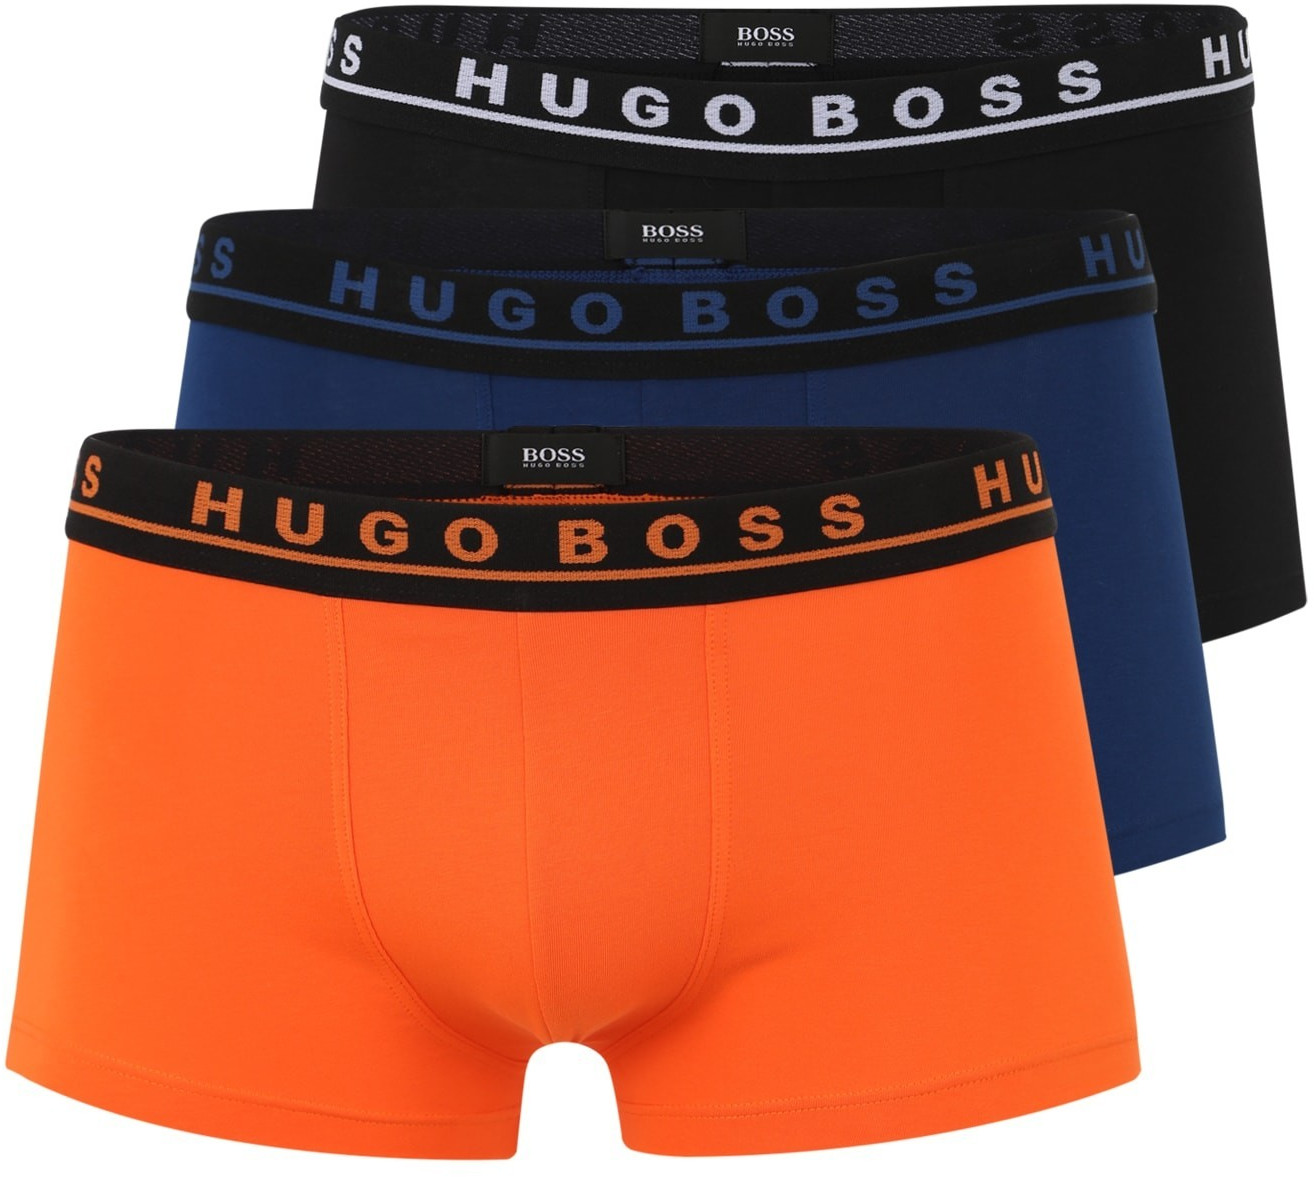 Hugo Boss Trunks 3er-Pack (50403529) ab 39,00 â¬ | Preisvergleich bei idealo.de